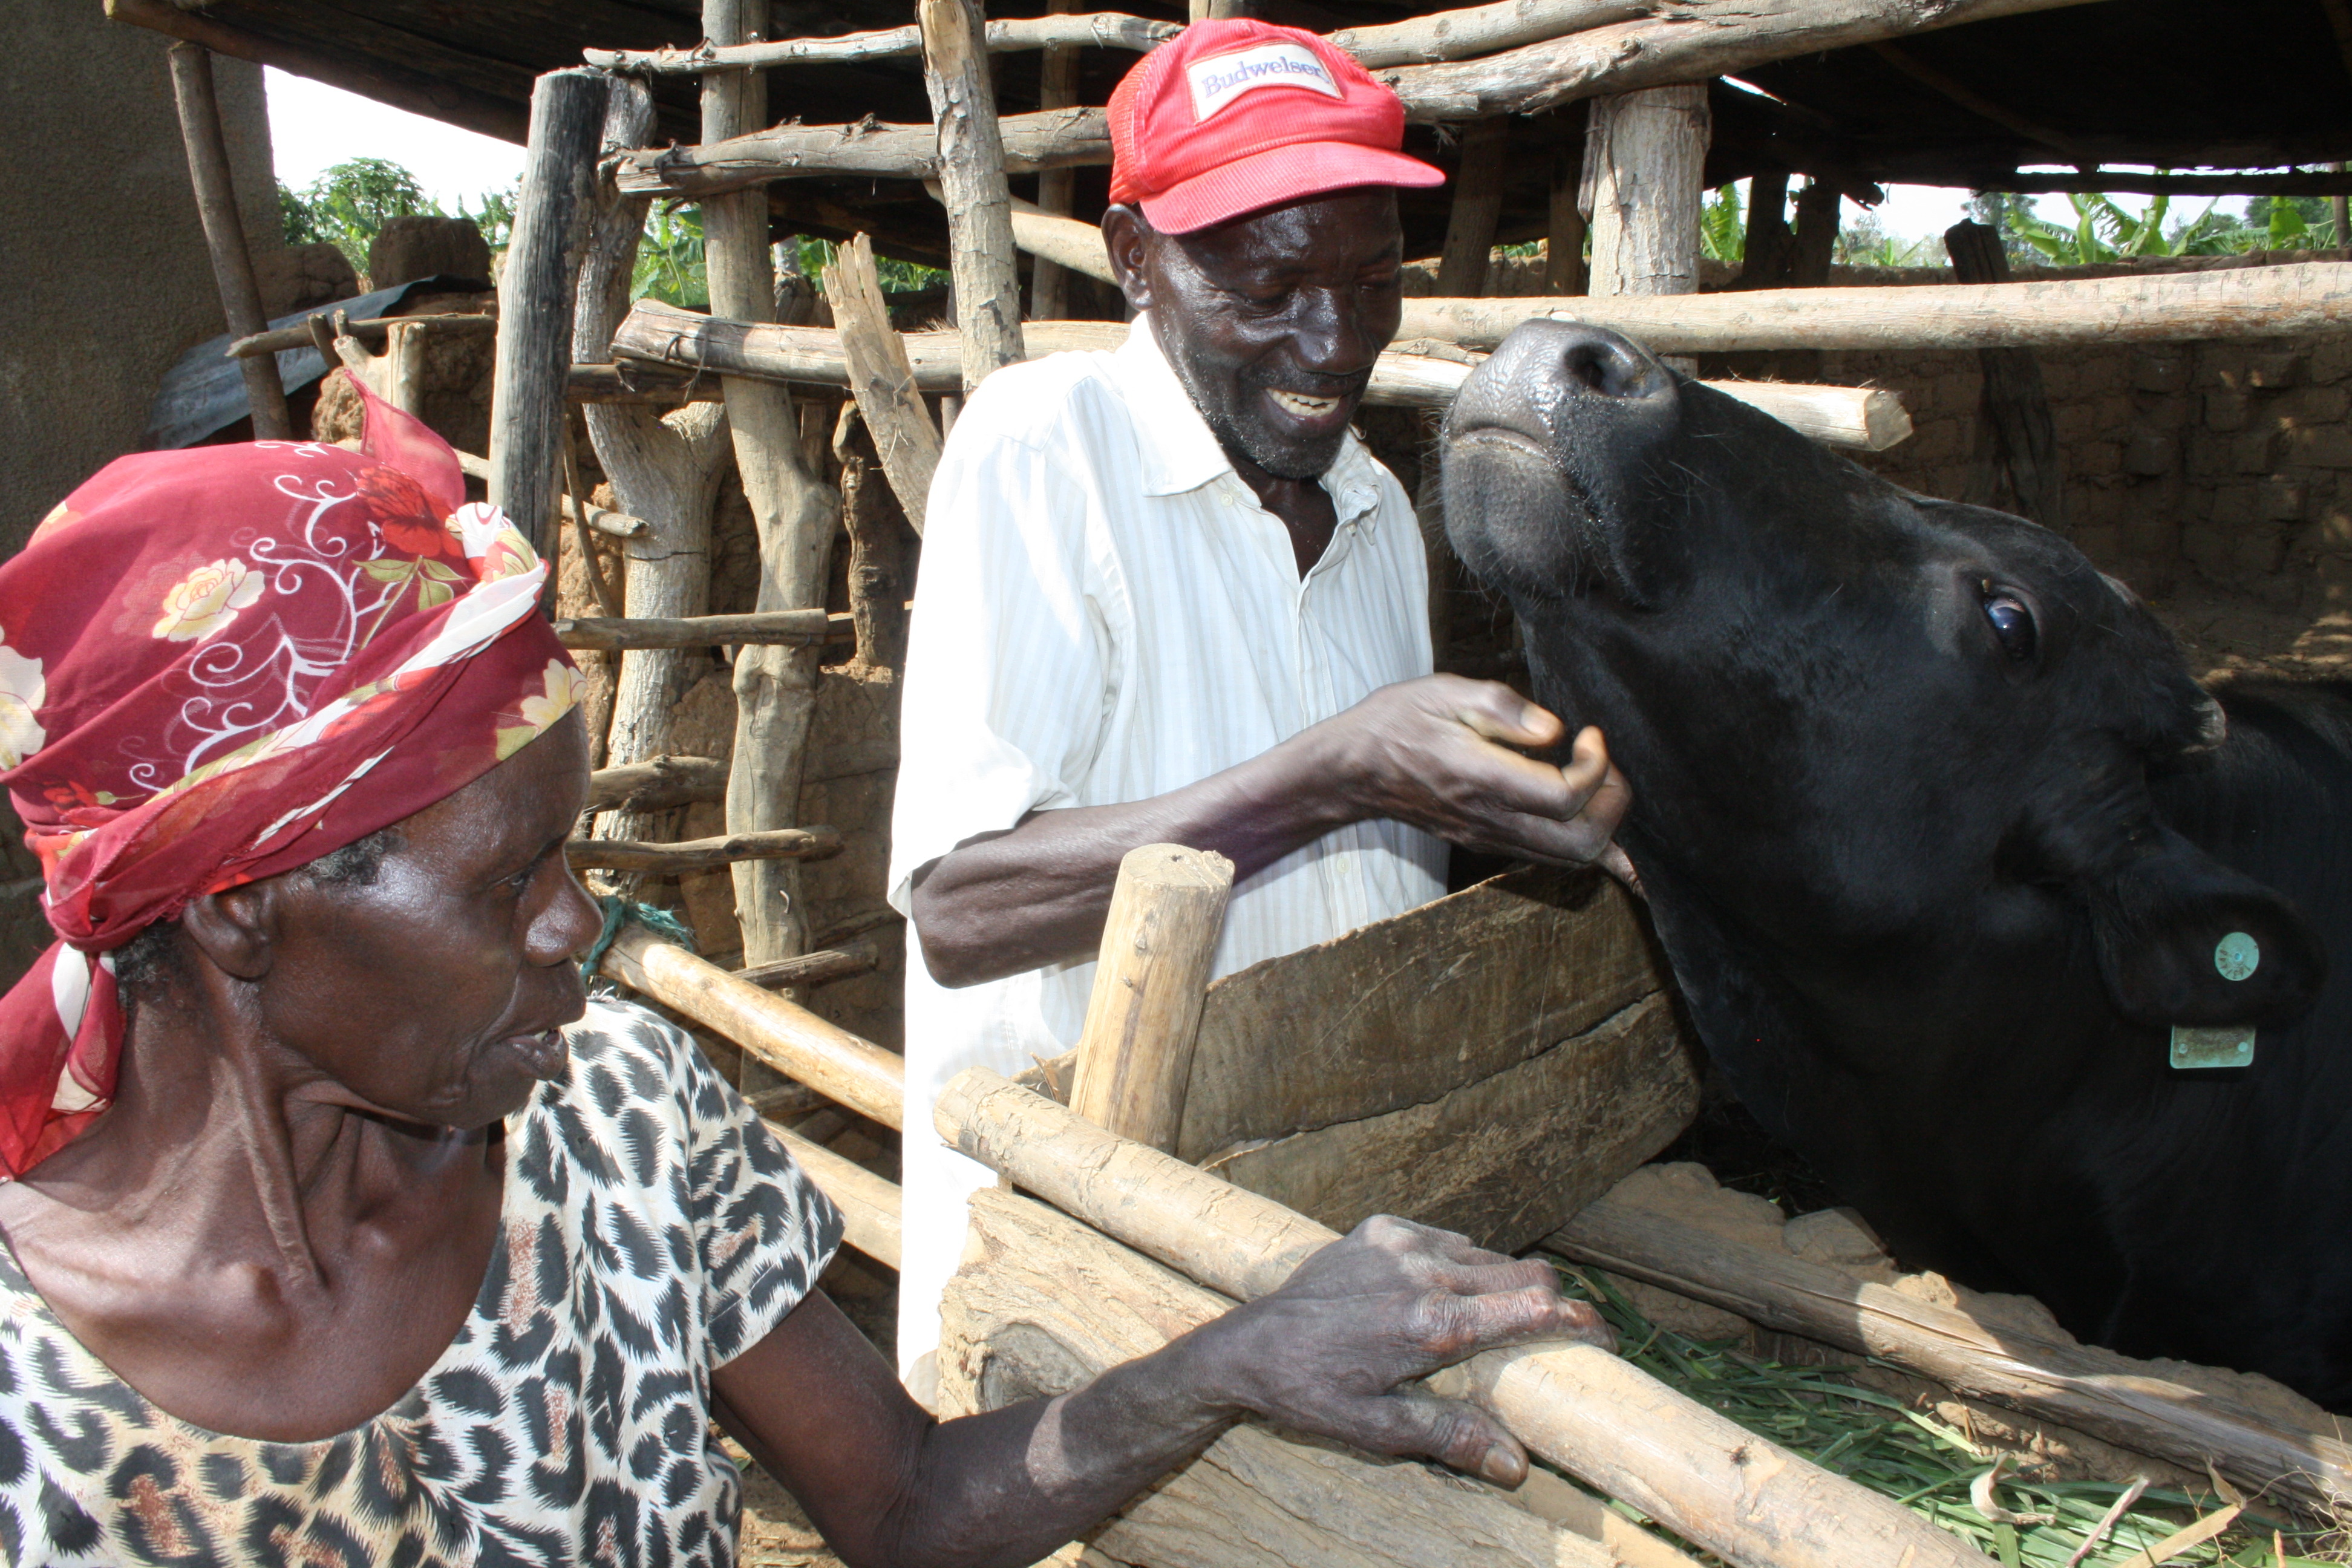 Mayange, Ruanda, 2015. szeptember 18.: a 75 éves Berikmasi Mugabo a tehenét vakargatja, amit a Millenniumi Falvak projekt keretében kapott.